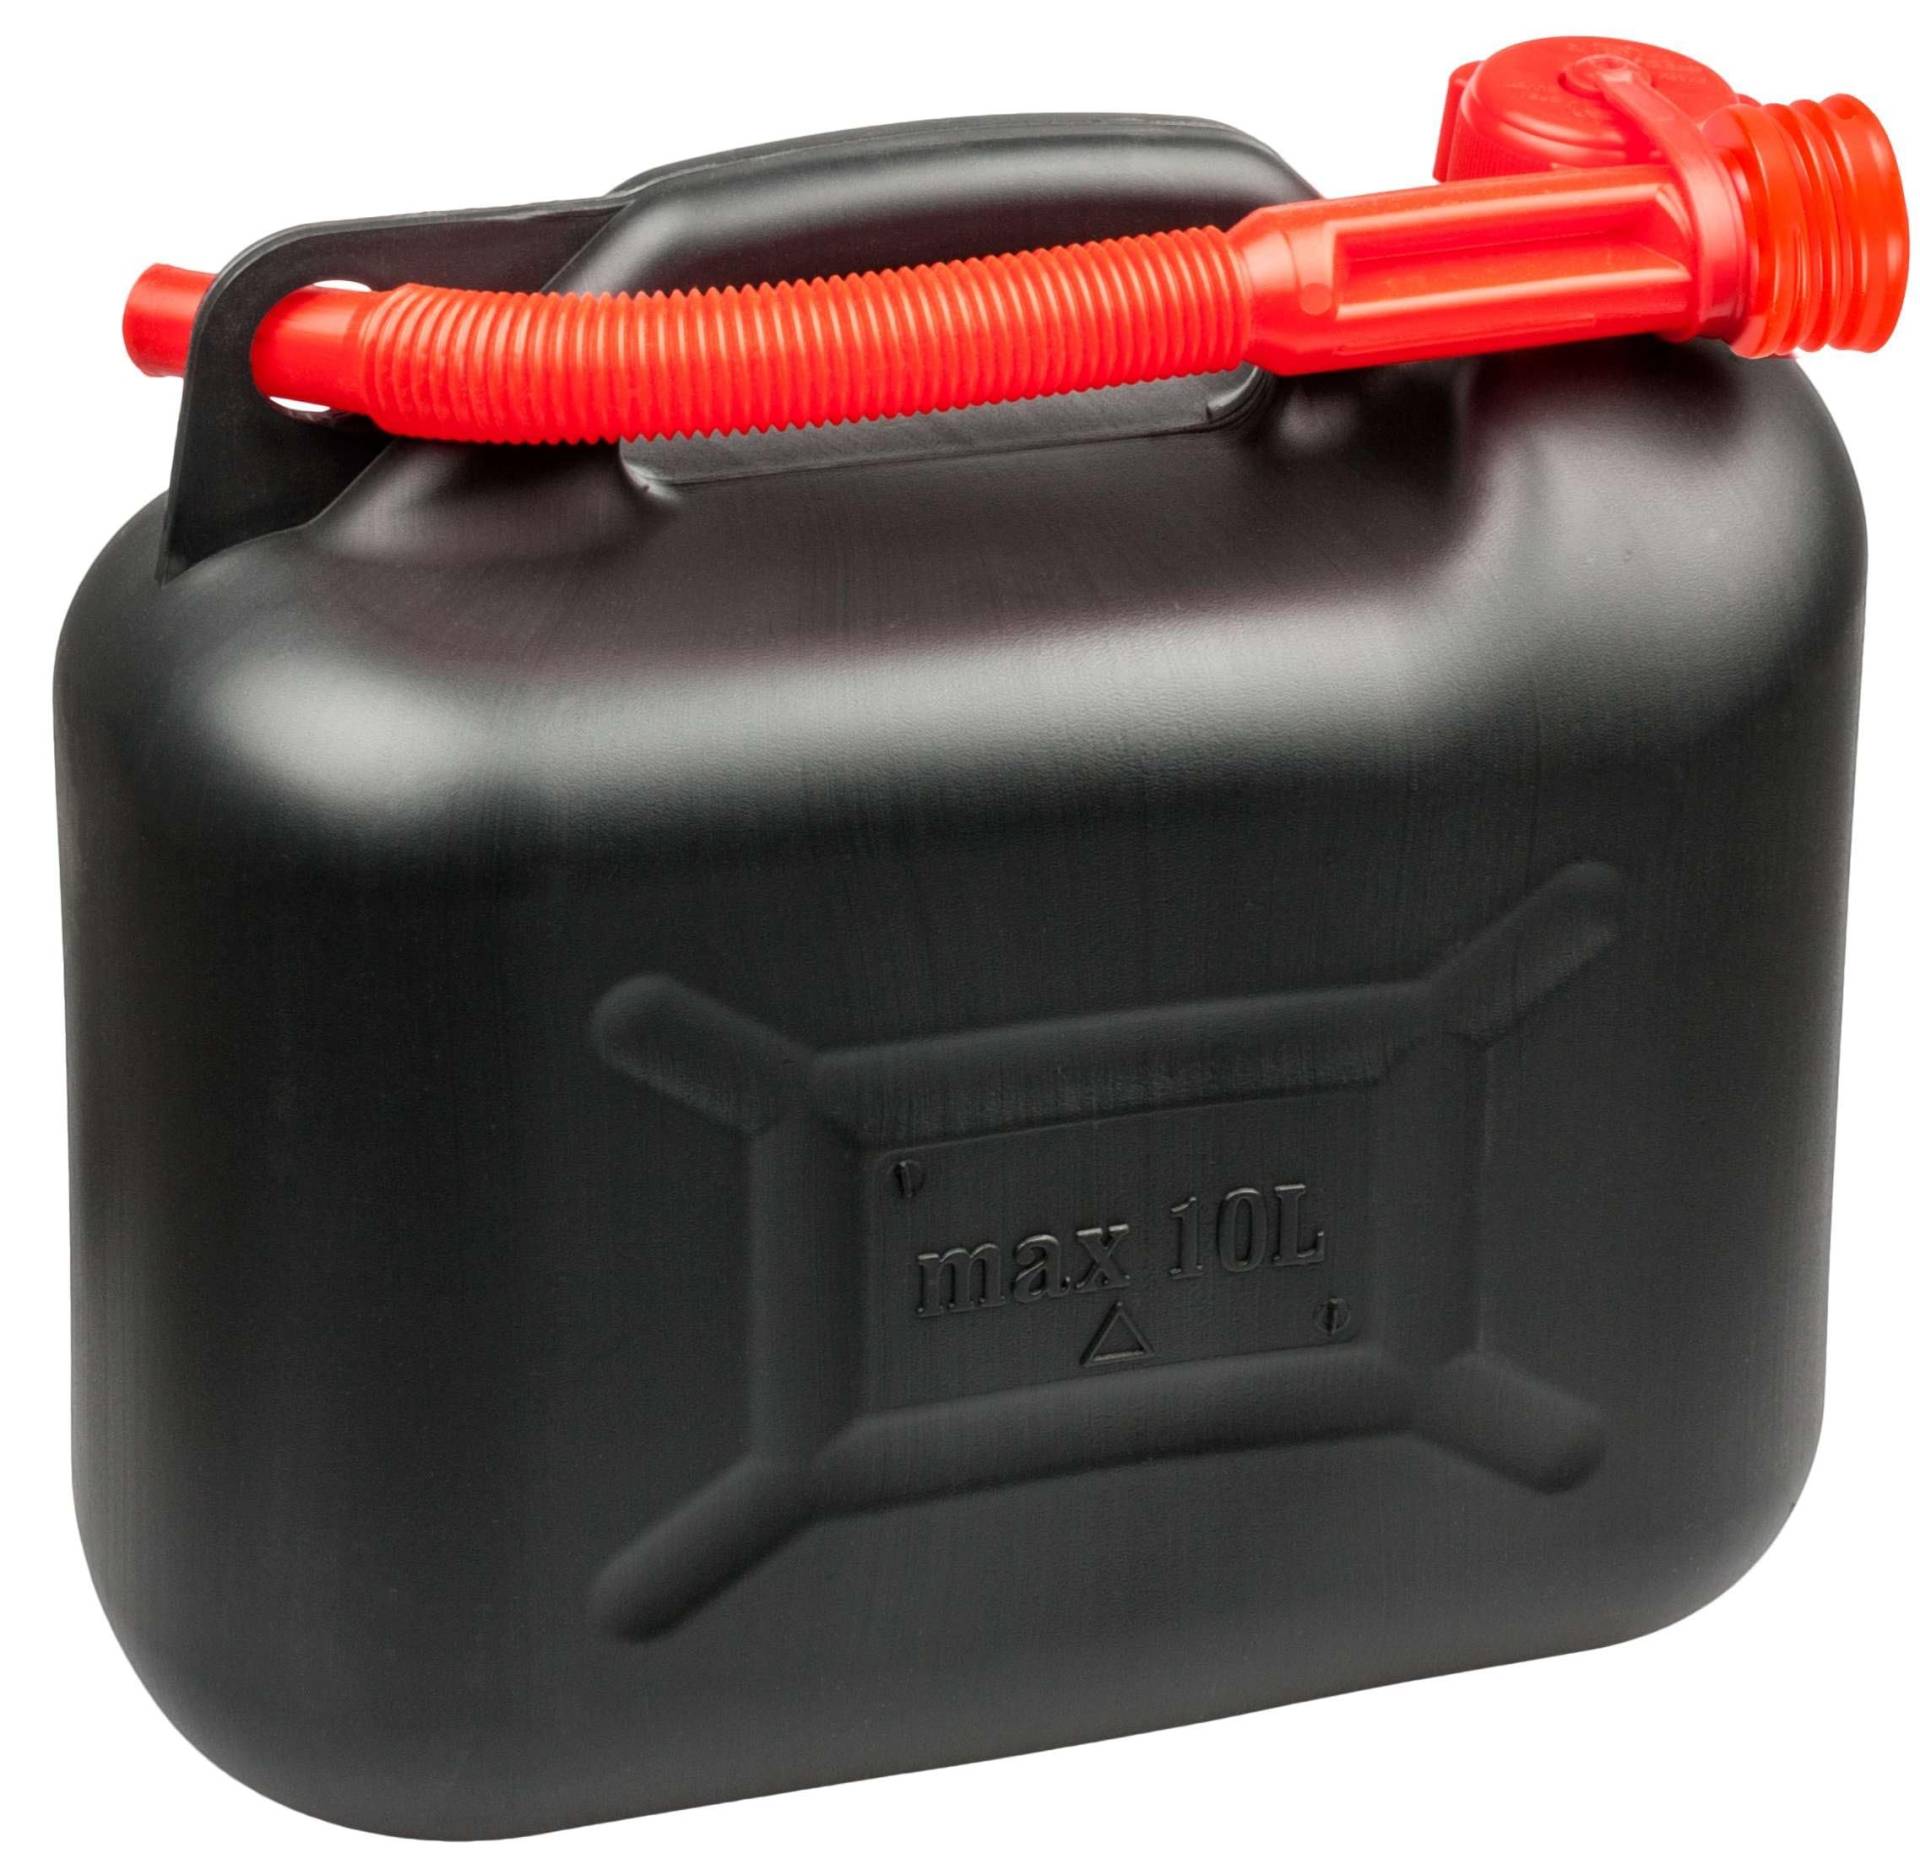 WALSER Benzinkanister 10 Liter, Kraftstoffkanister UN-geprüft mit Sicherheitsverschluss, Kunststoff Kanister, Reservekanister schwarz 16373 von Walser